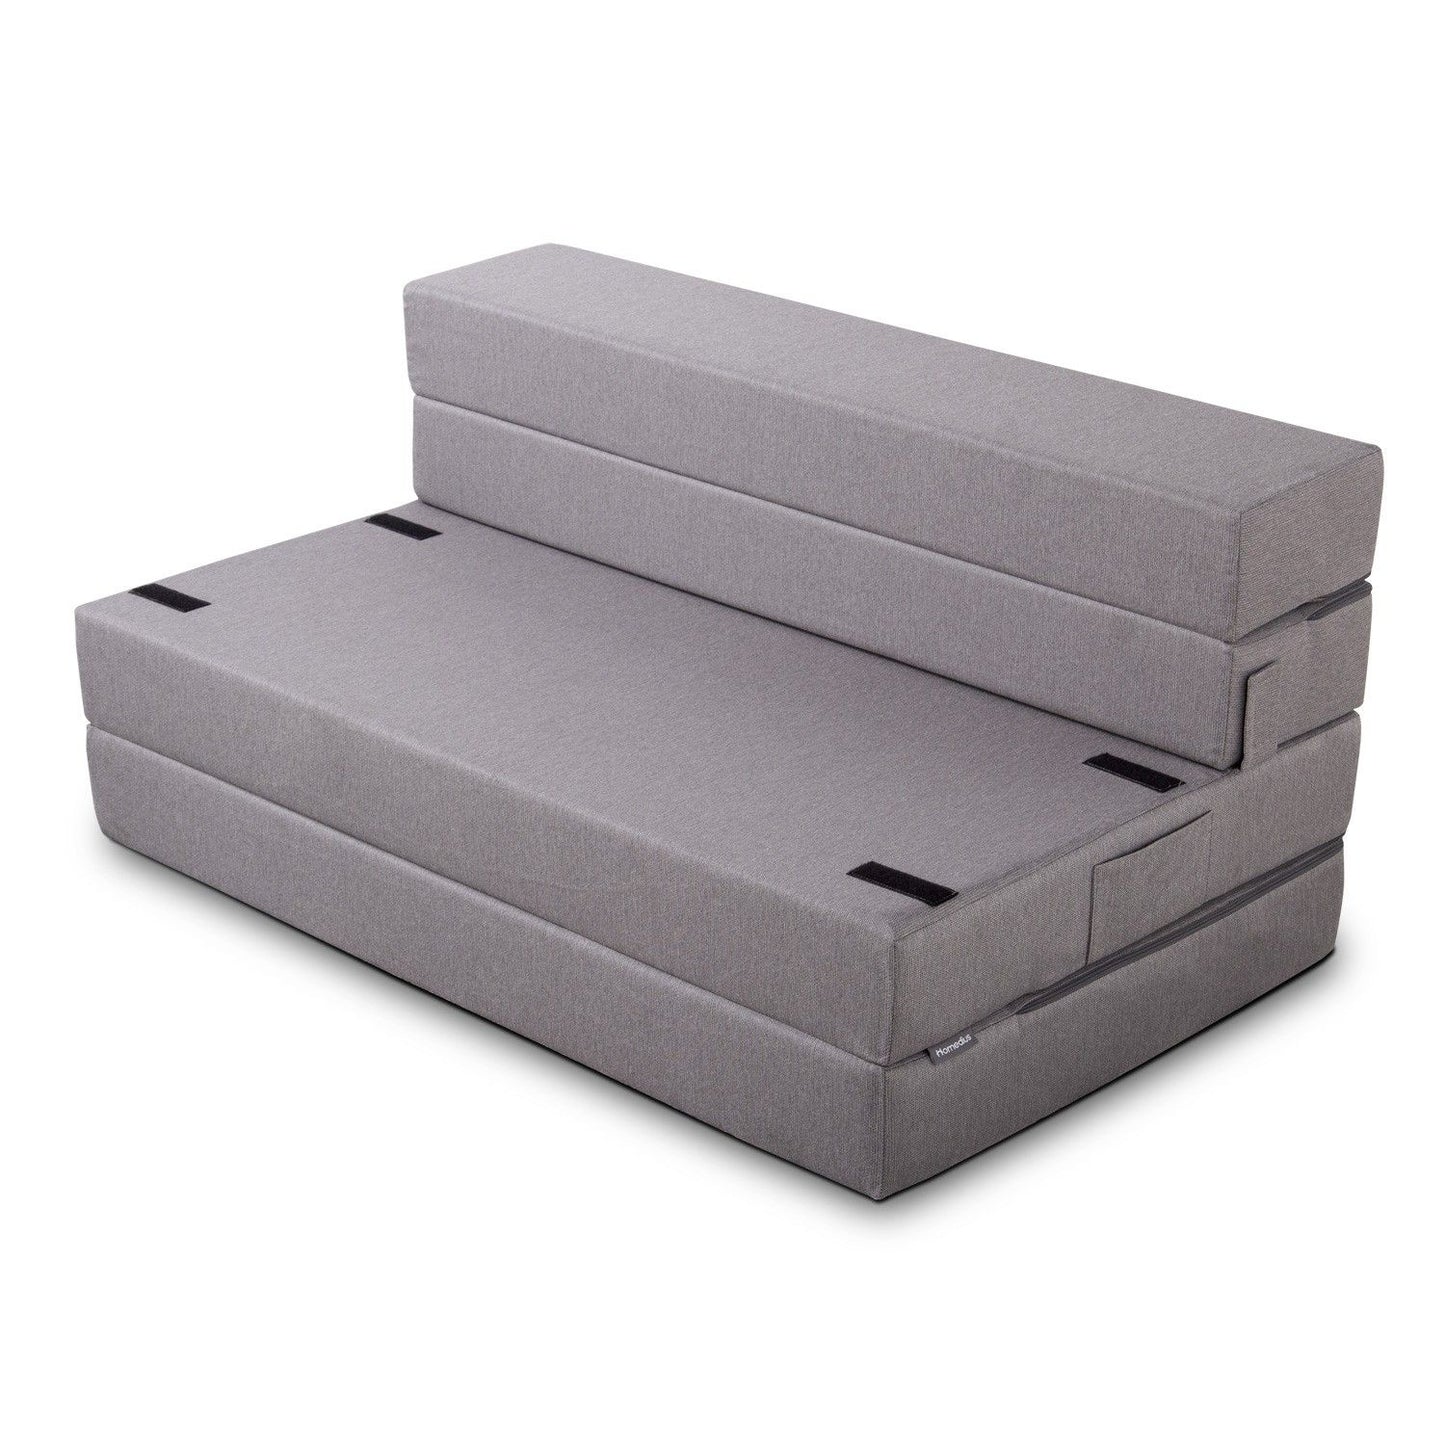 Melisa - Grey - 2-Seat Sofa-Bed